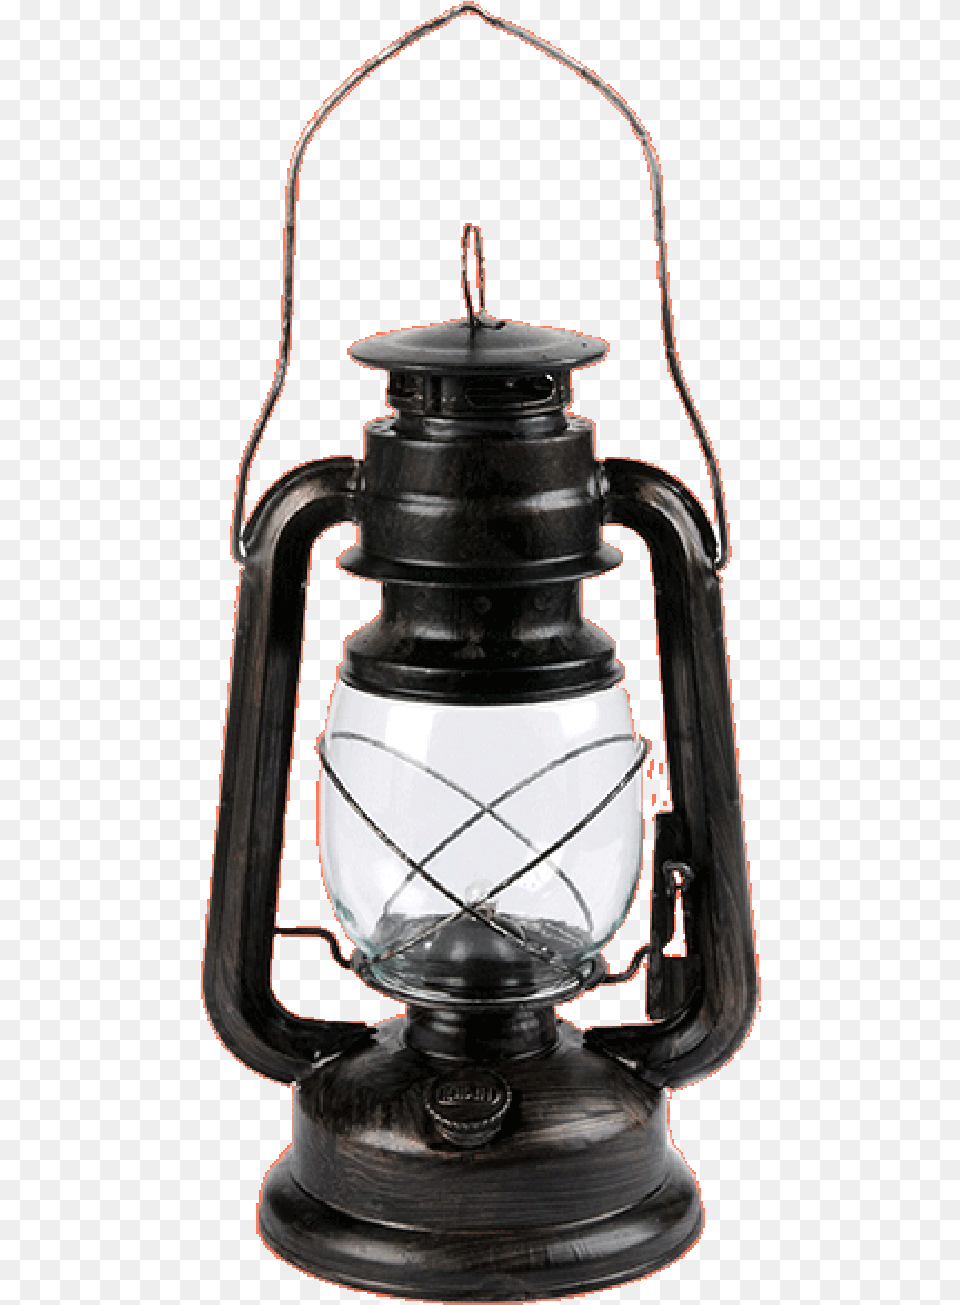 Lamp Oil Lighting Kerosene Lantern Clipart Hq, Bottle, Shaker Free Png Download